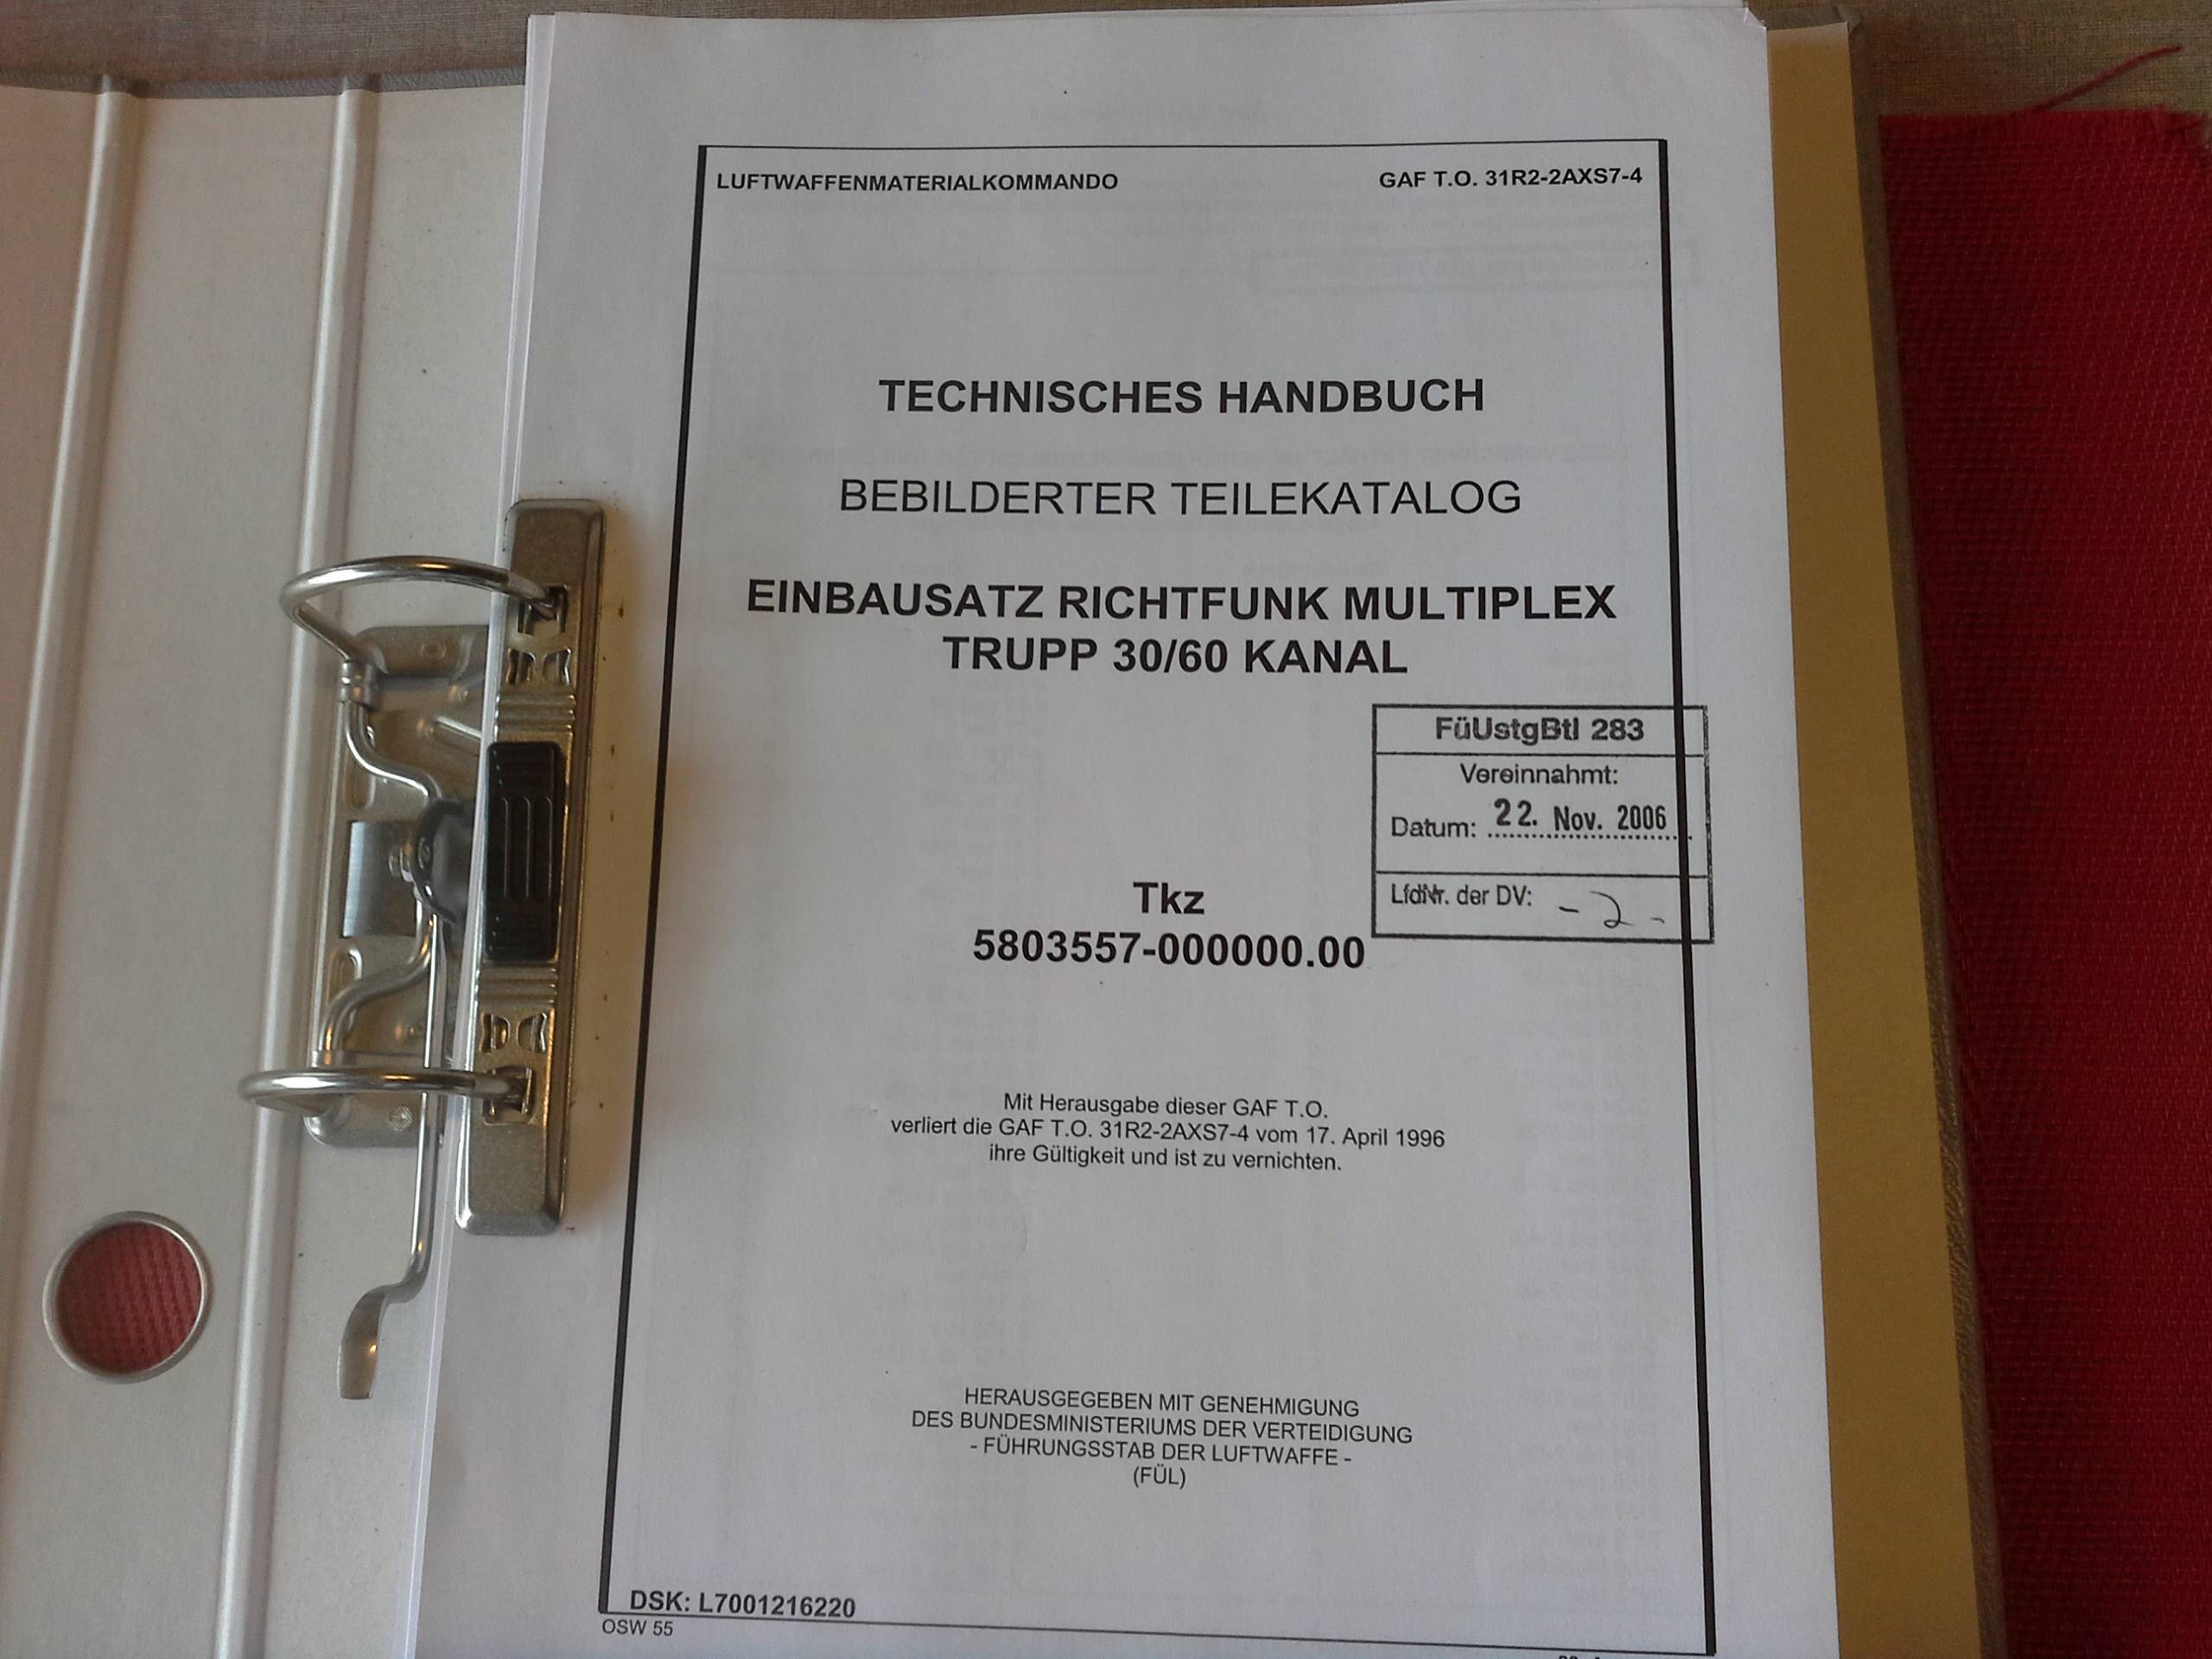 GAF T.O. 31R2-2AXS7-4, Technisches Handbuch, Einbausatz Richtfunk Multiplex Trupp 30/60 Kanal